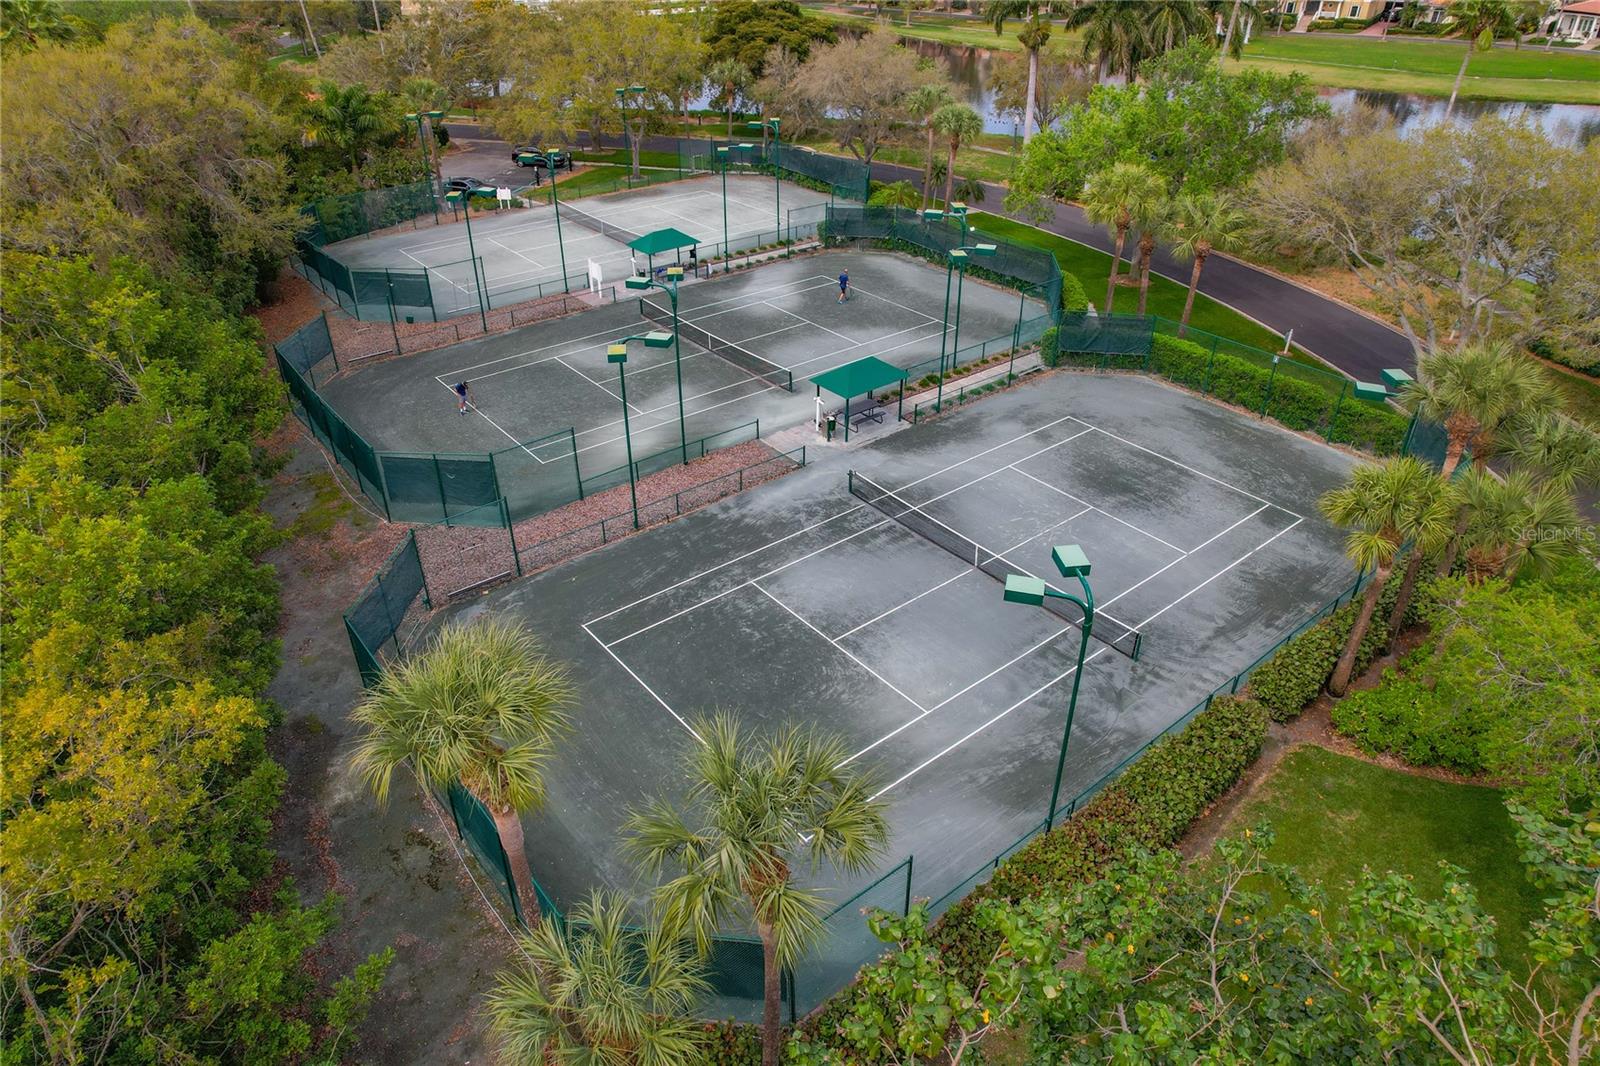 Har-tru tennis courts.